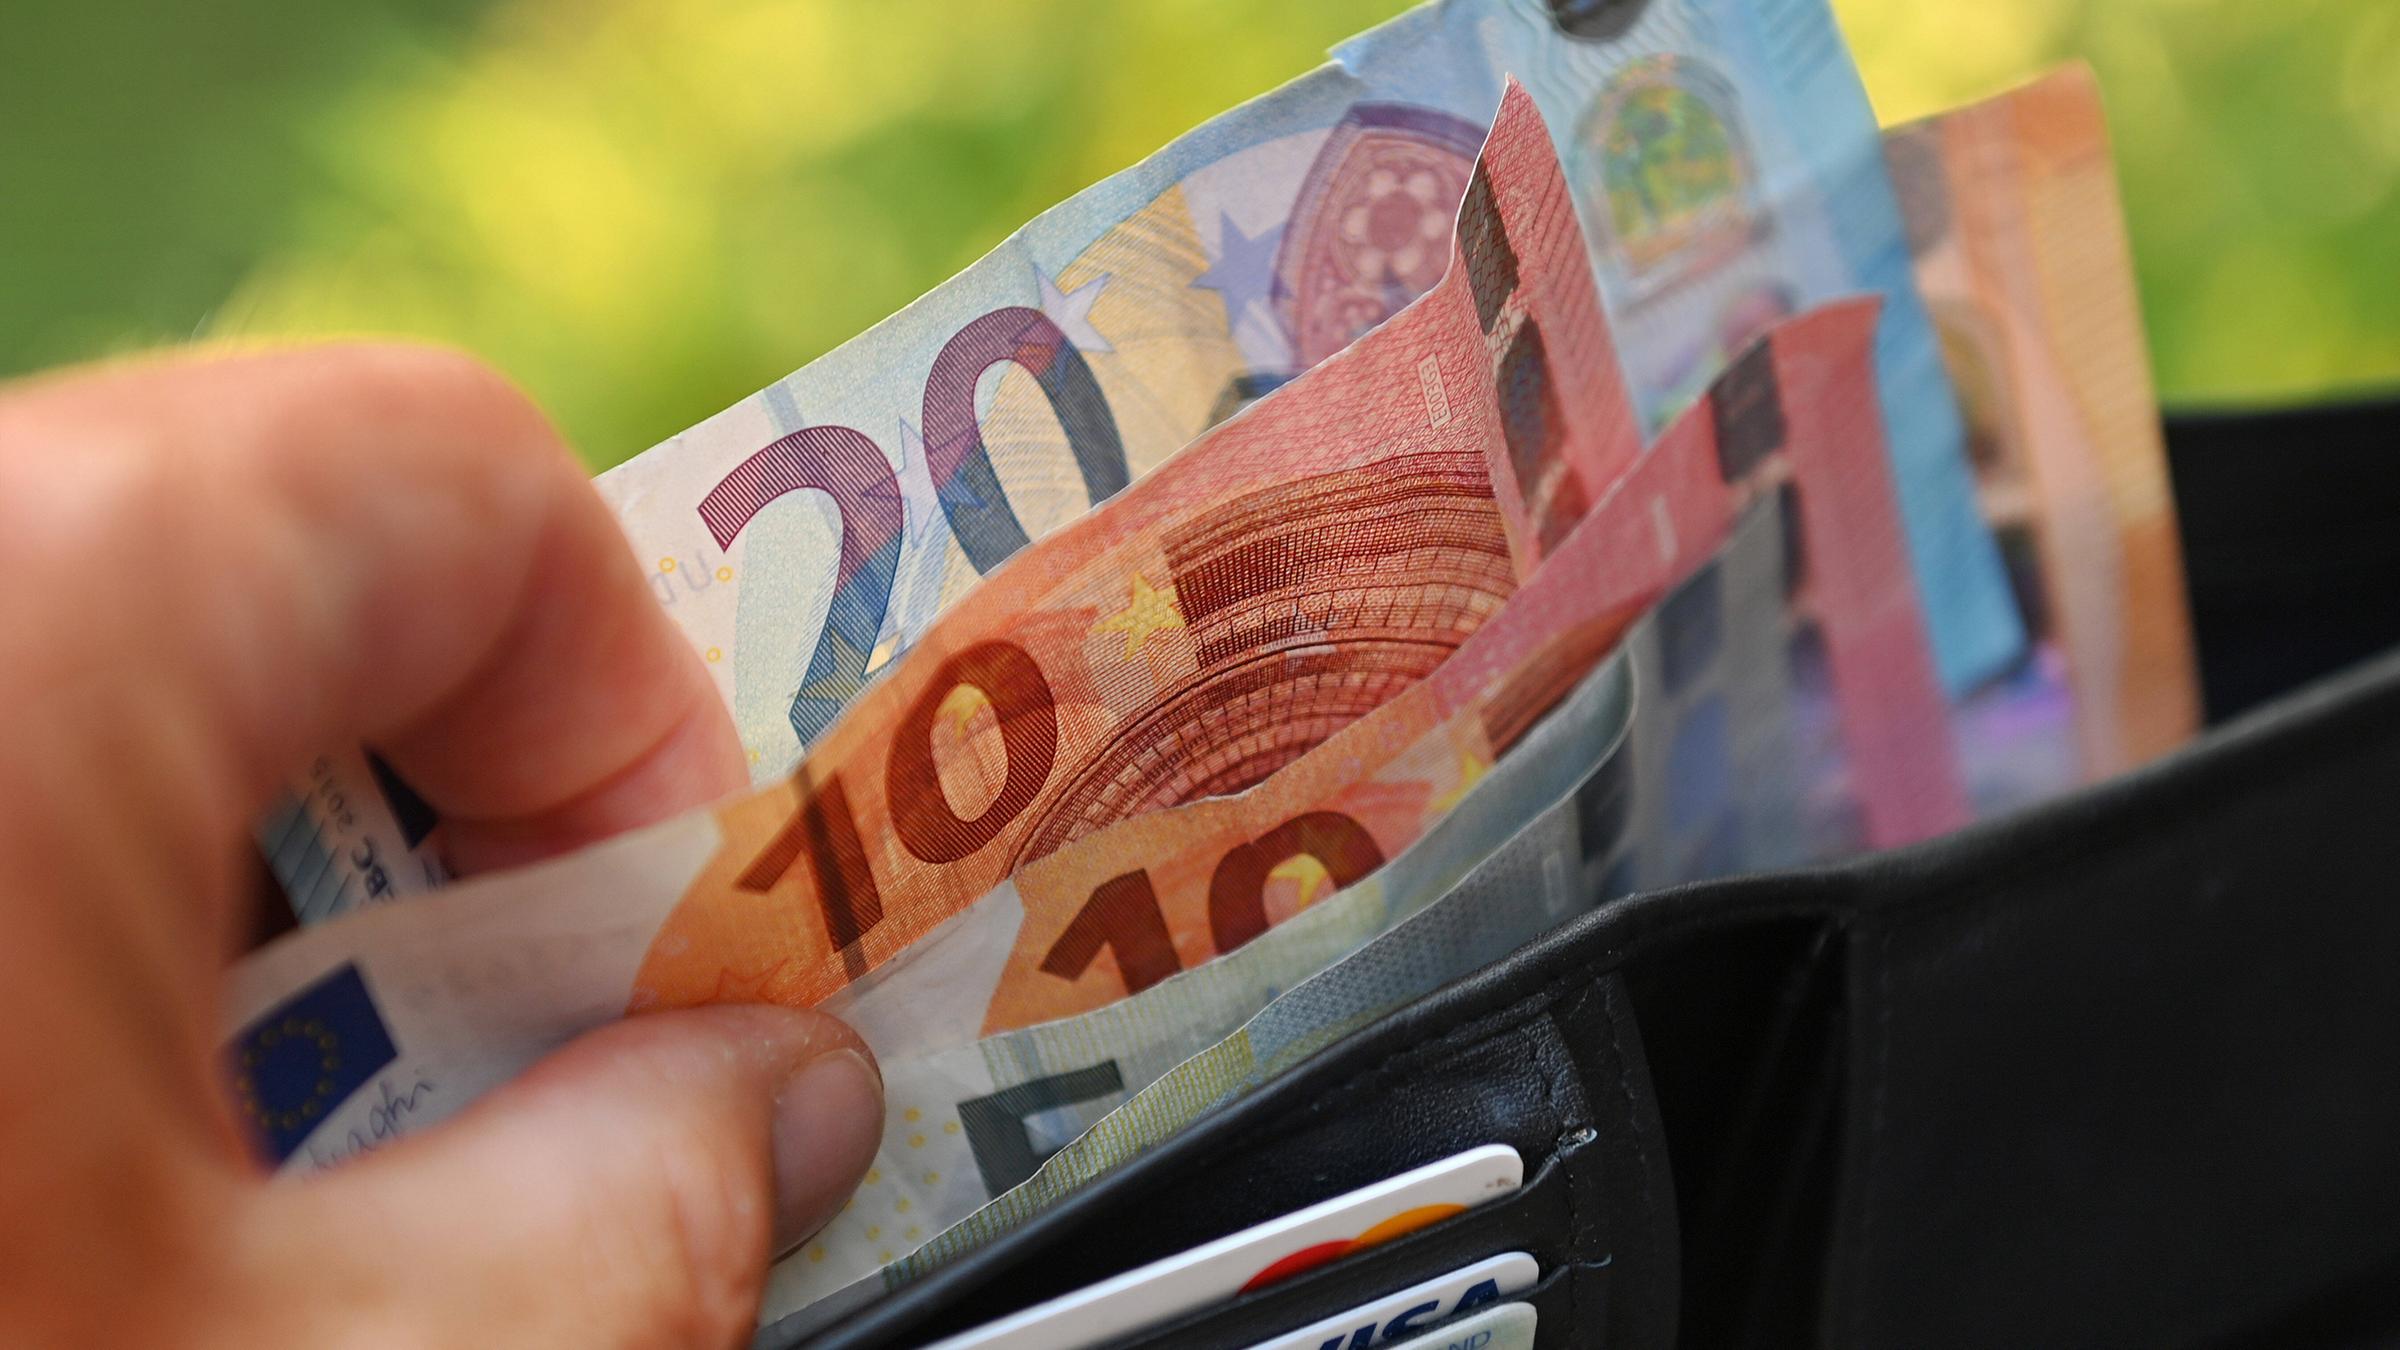 Archiv: Eine Hand nimmt Euro Scheine aus einem Portemonnaie